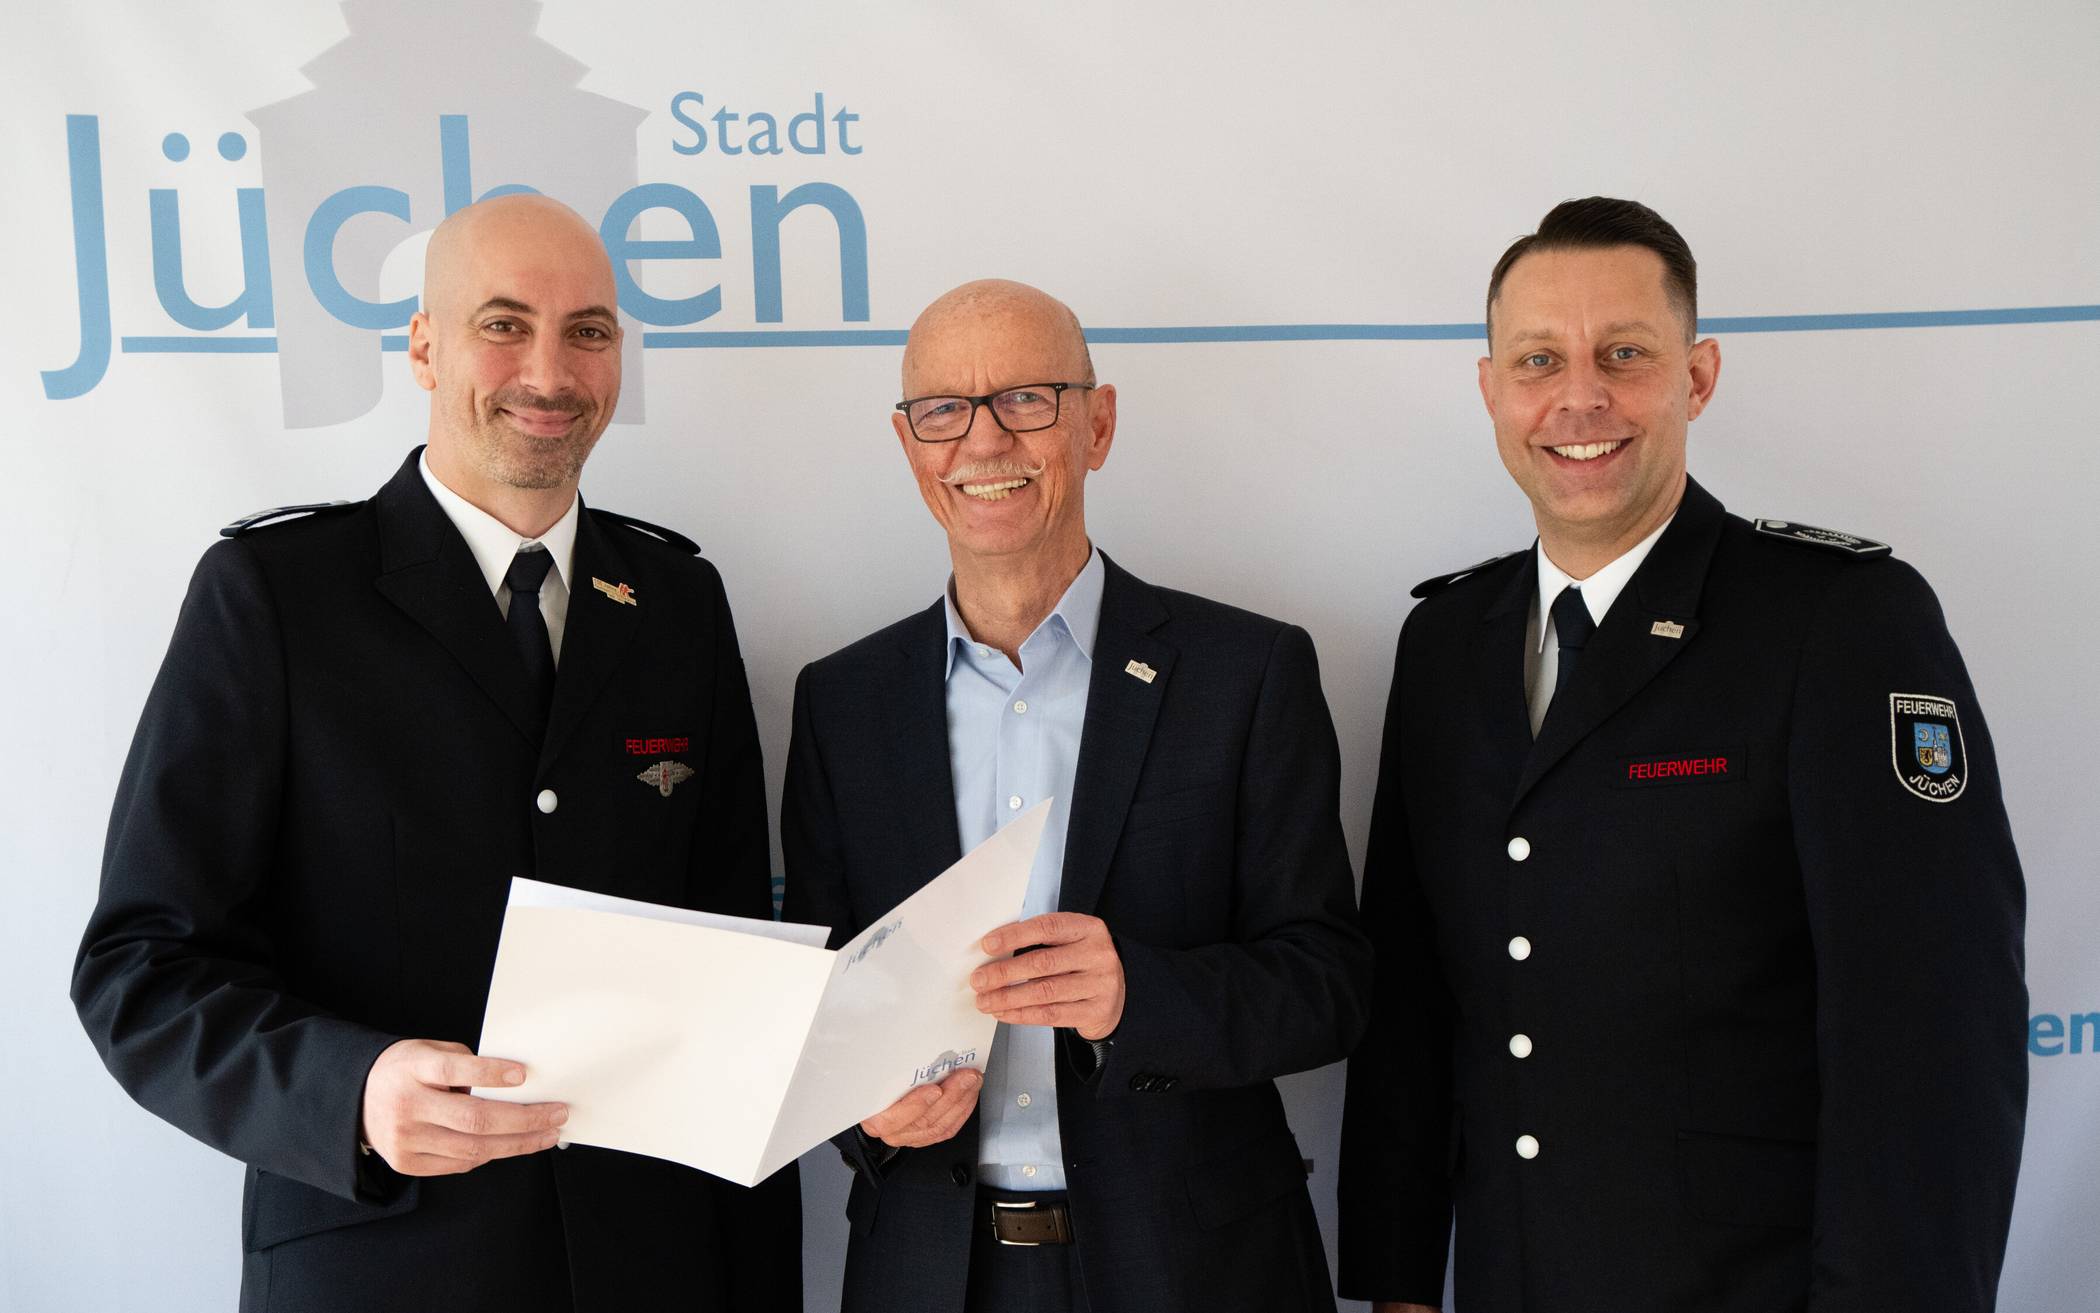  Von links: Frank Poestgens (neuer stellvertretender Leiter der Feuerwehr), Bürgermeister Harald Zillikens und Heinz Dieter Abels (Leiter der Feuerwehr Jüchen).  